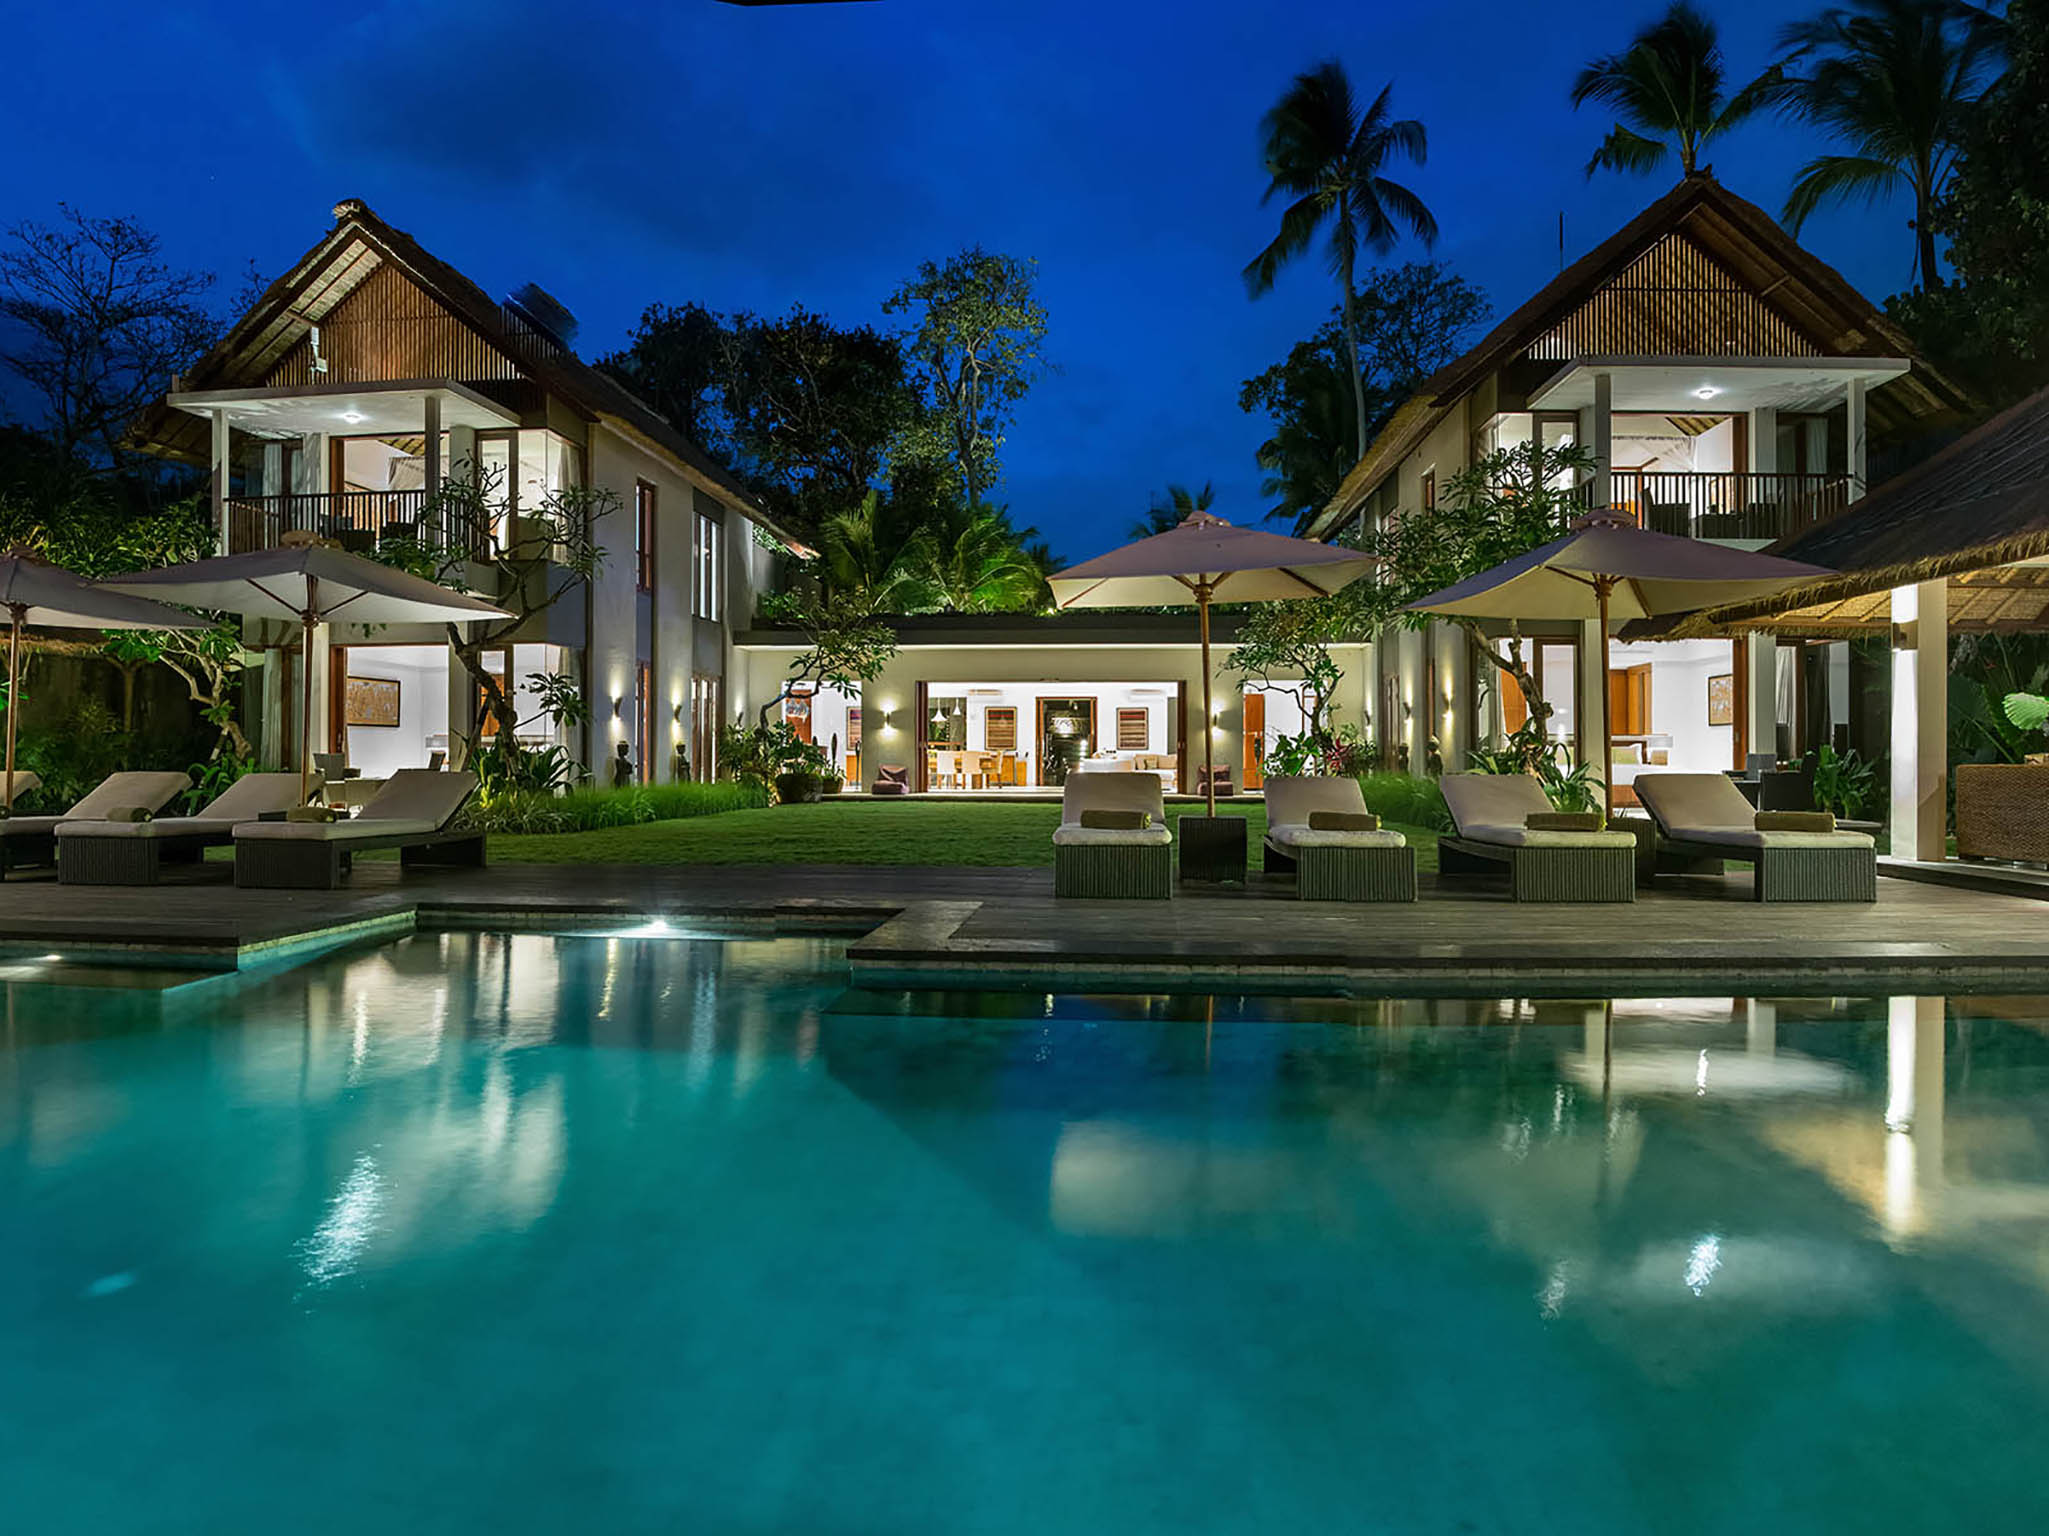 Seseh Beach Villa I - The villa at night - Seseh Beach Villa I, Seseh-Tanah Lot, Bali